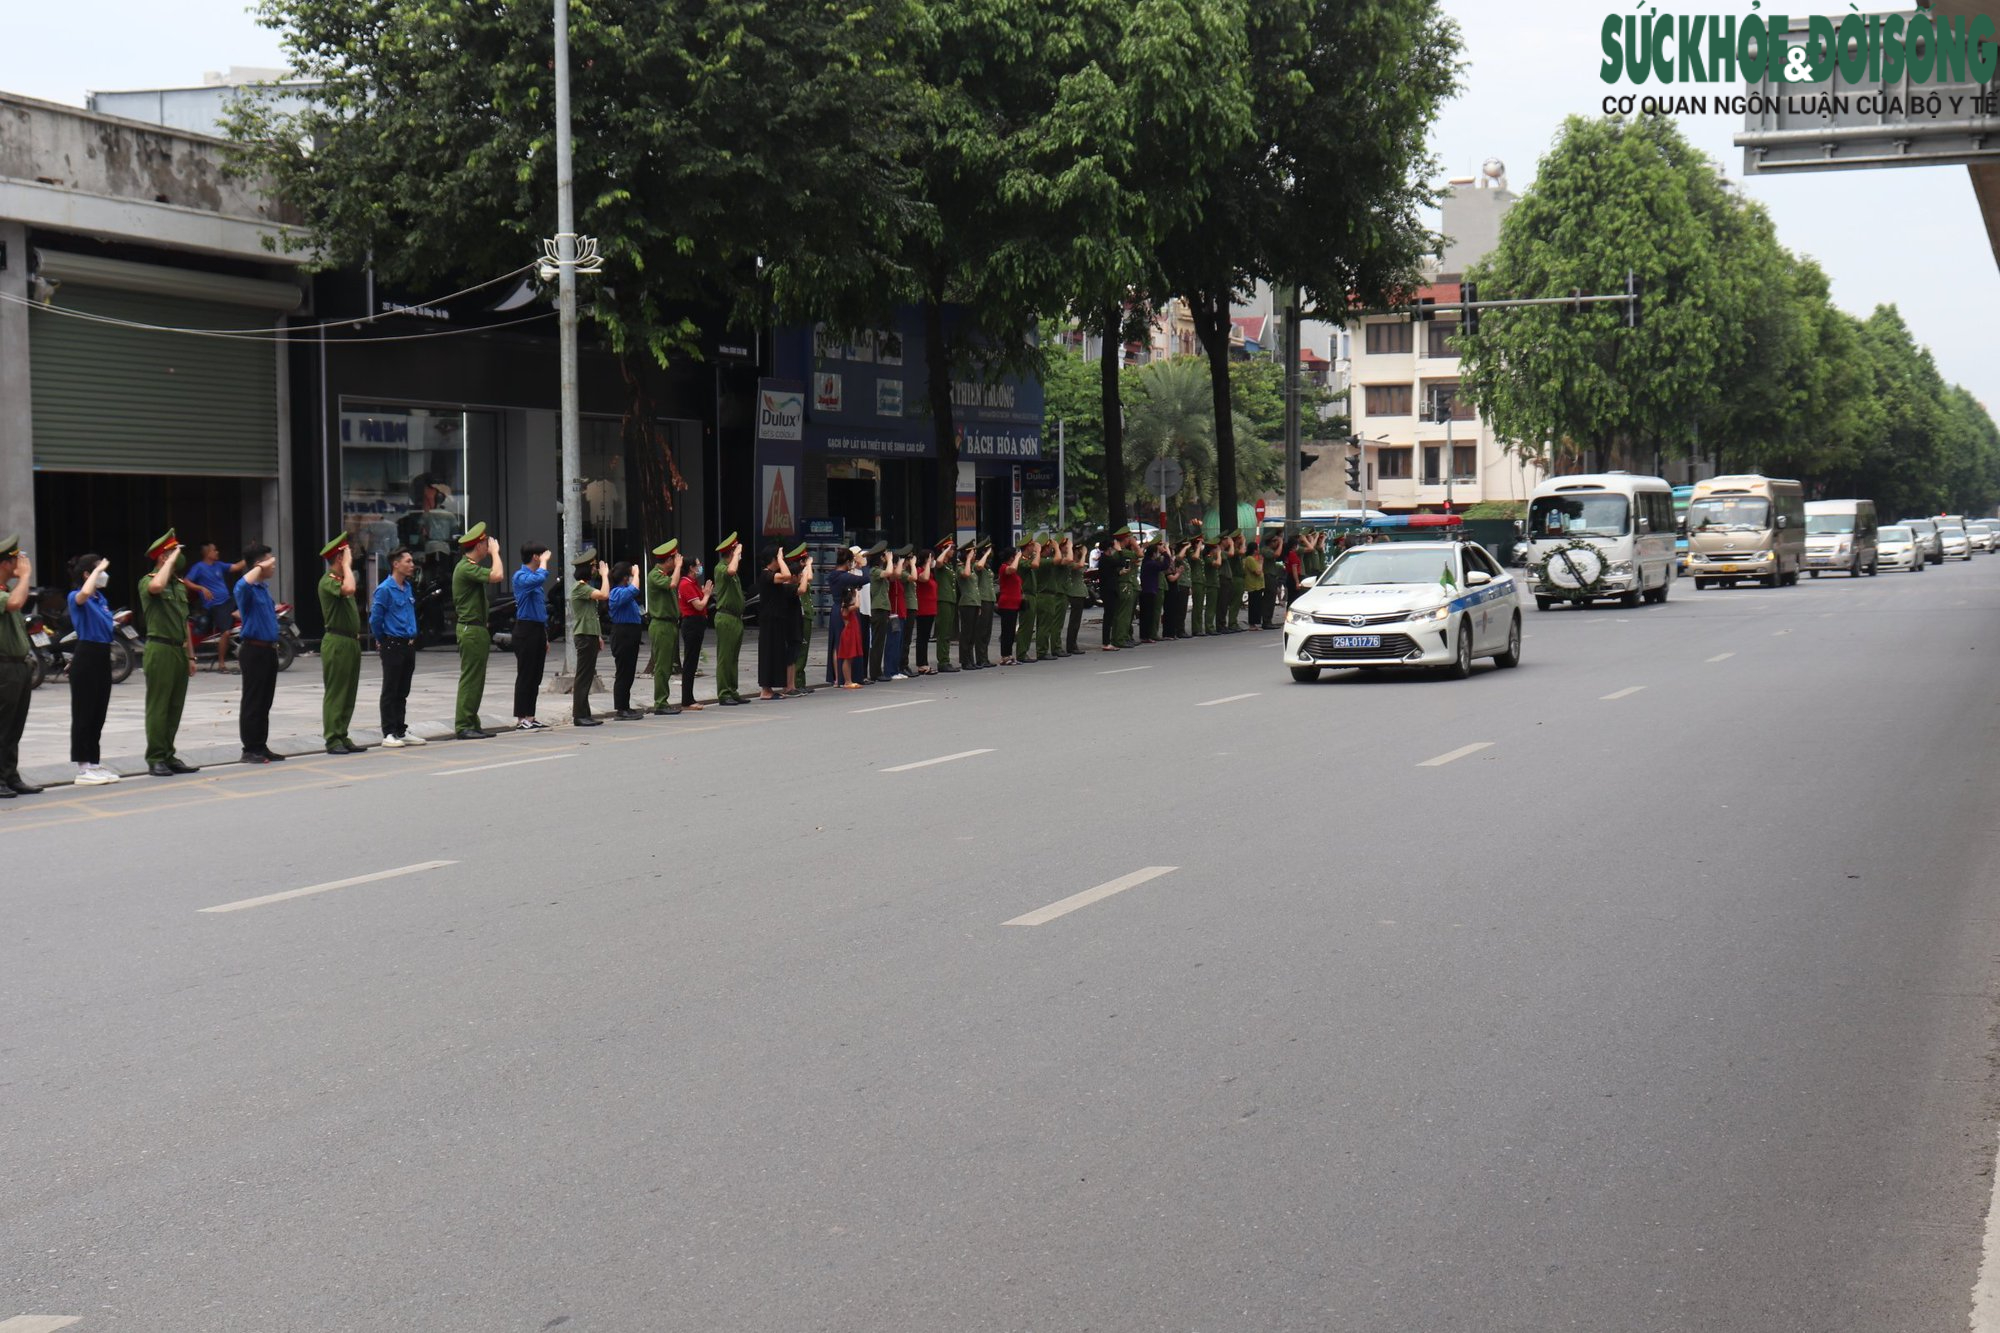 Đồng đội, người dân chào tiễn biệt 3 chiến sĩ Cảnh sát PCCC trên đường - Ảnh 7.